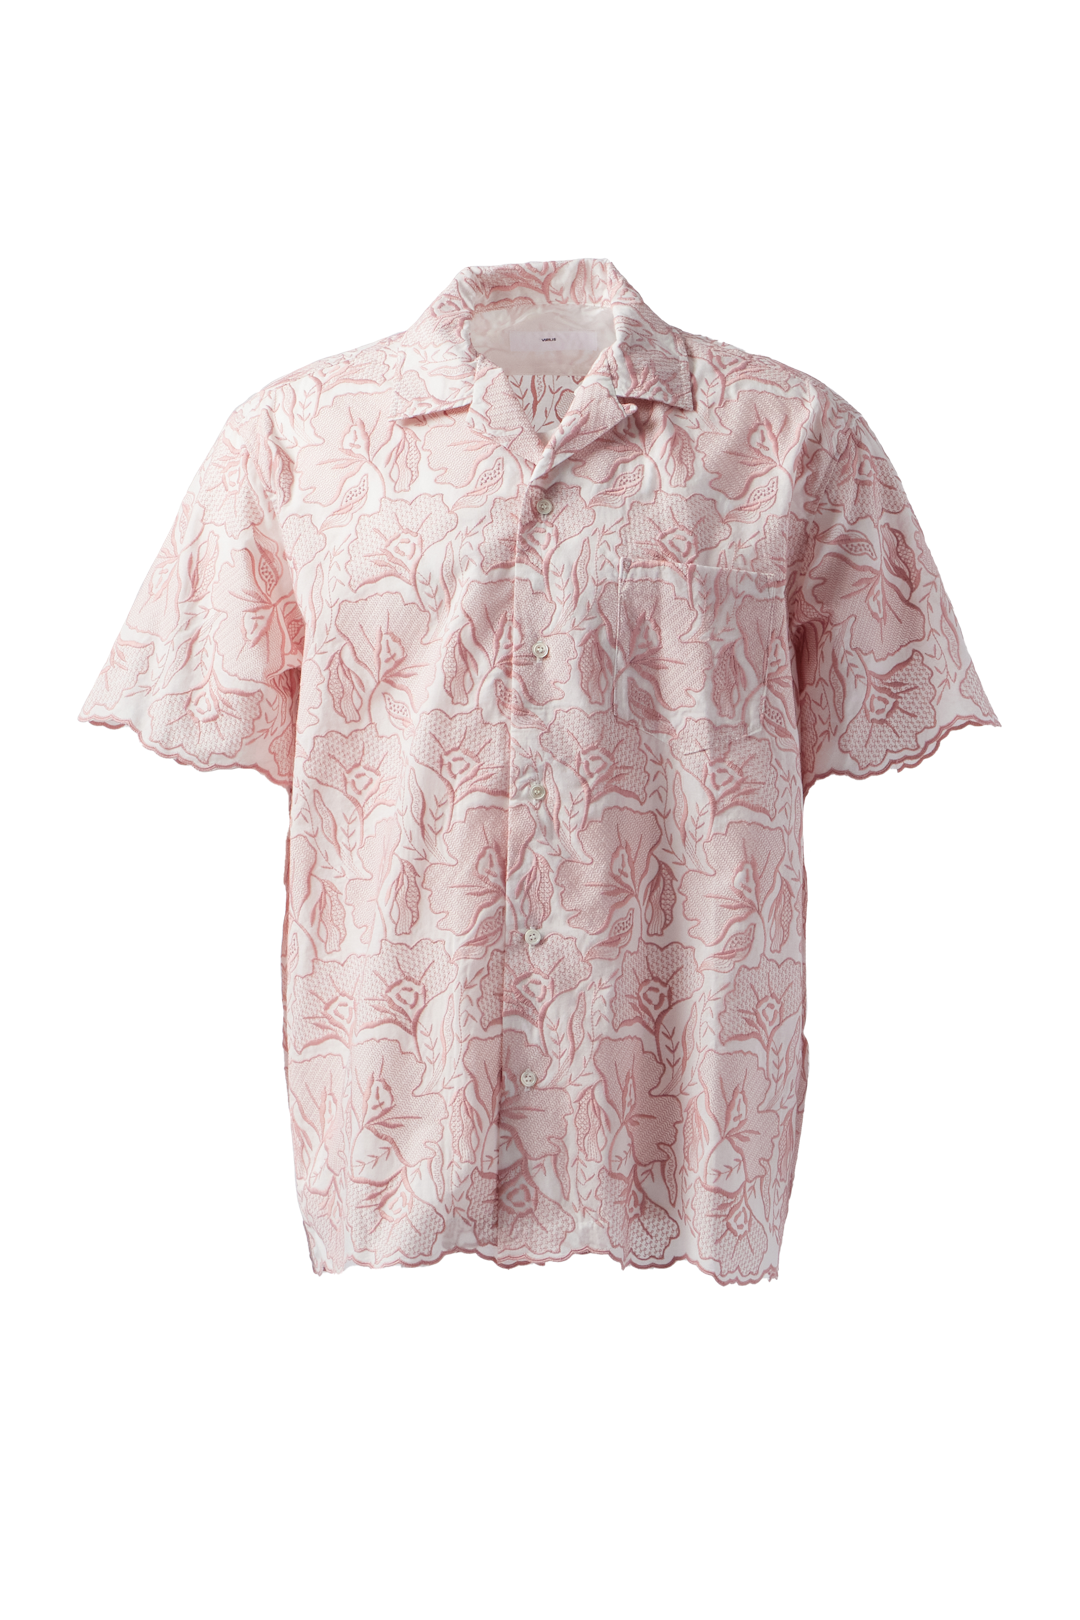 TOGA VIRILIS - Lace S/S Shirt product image